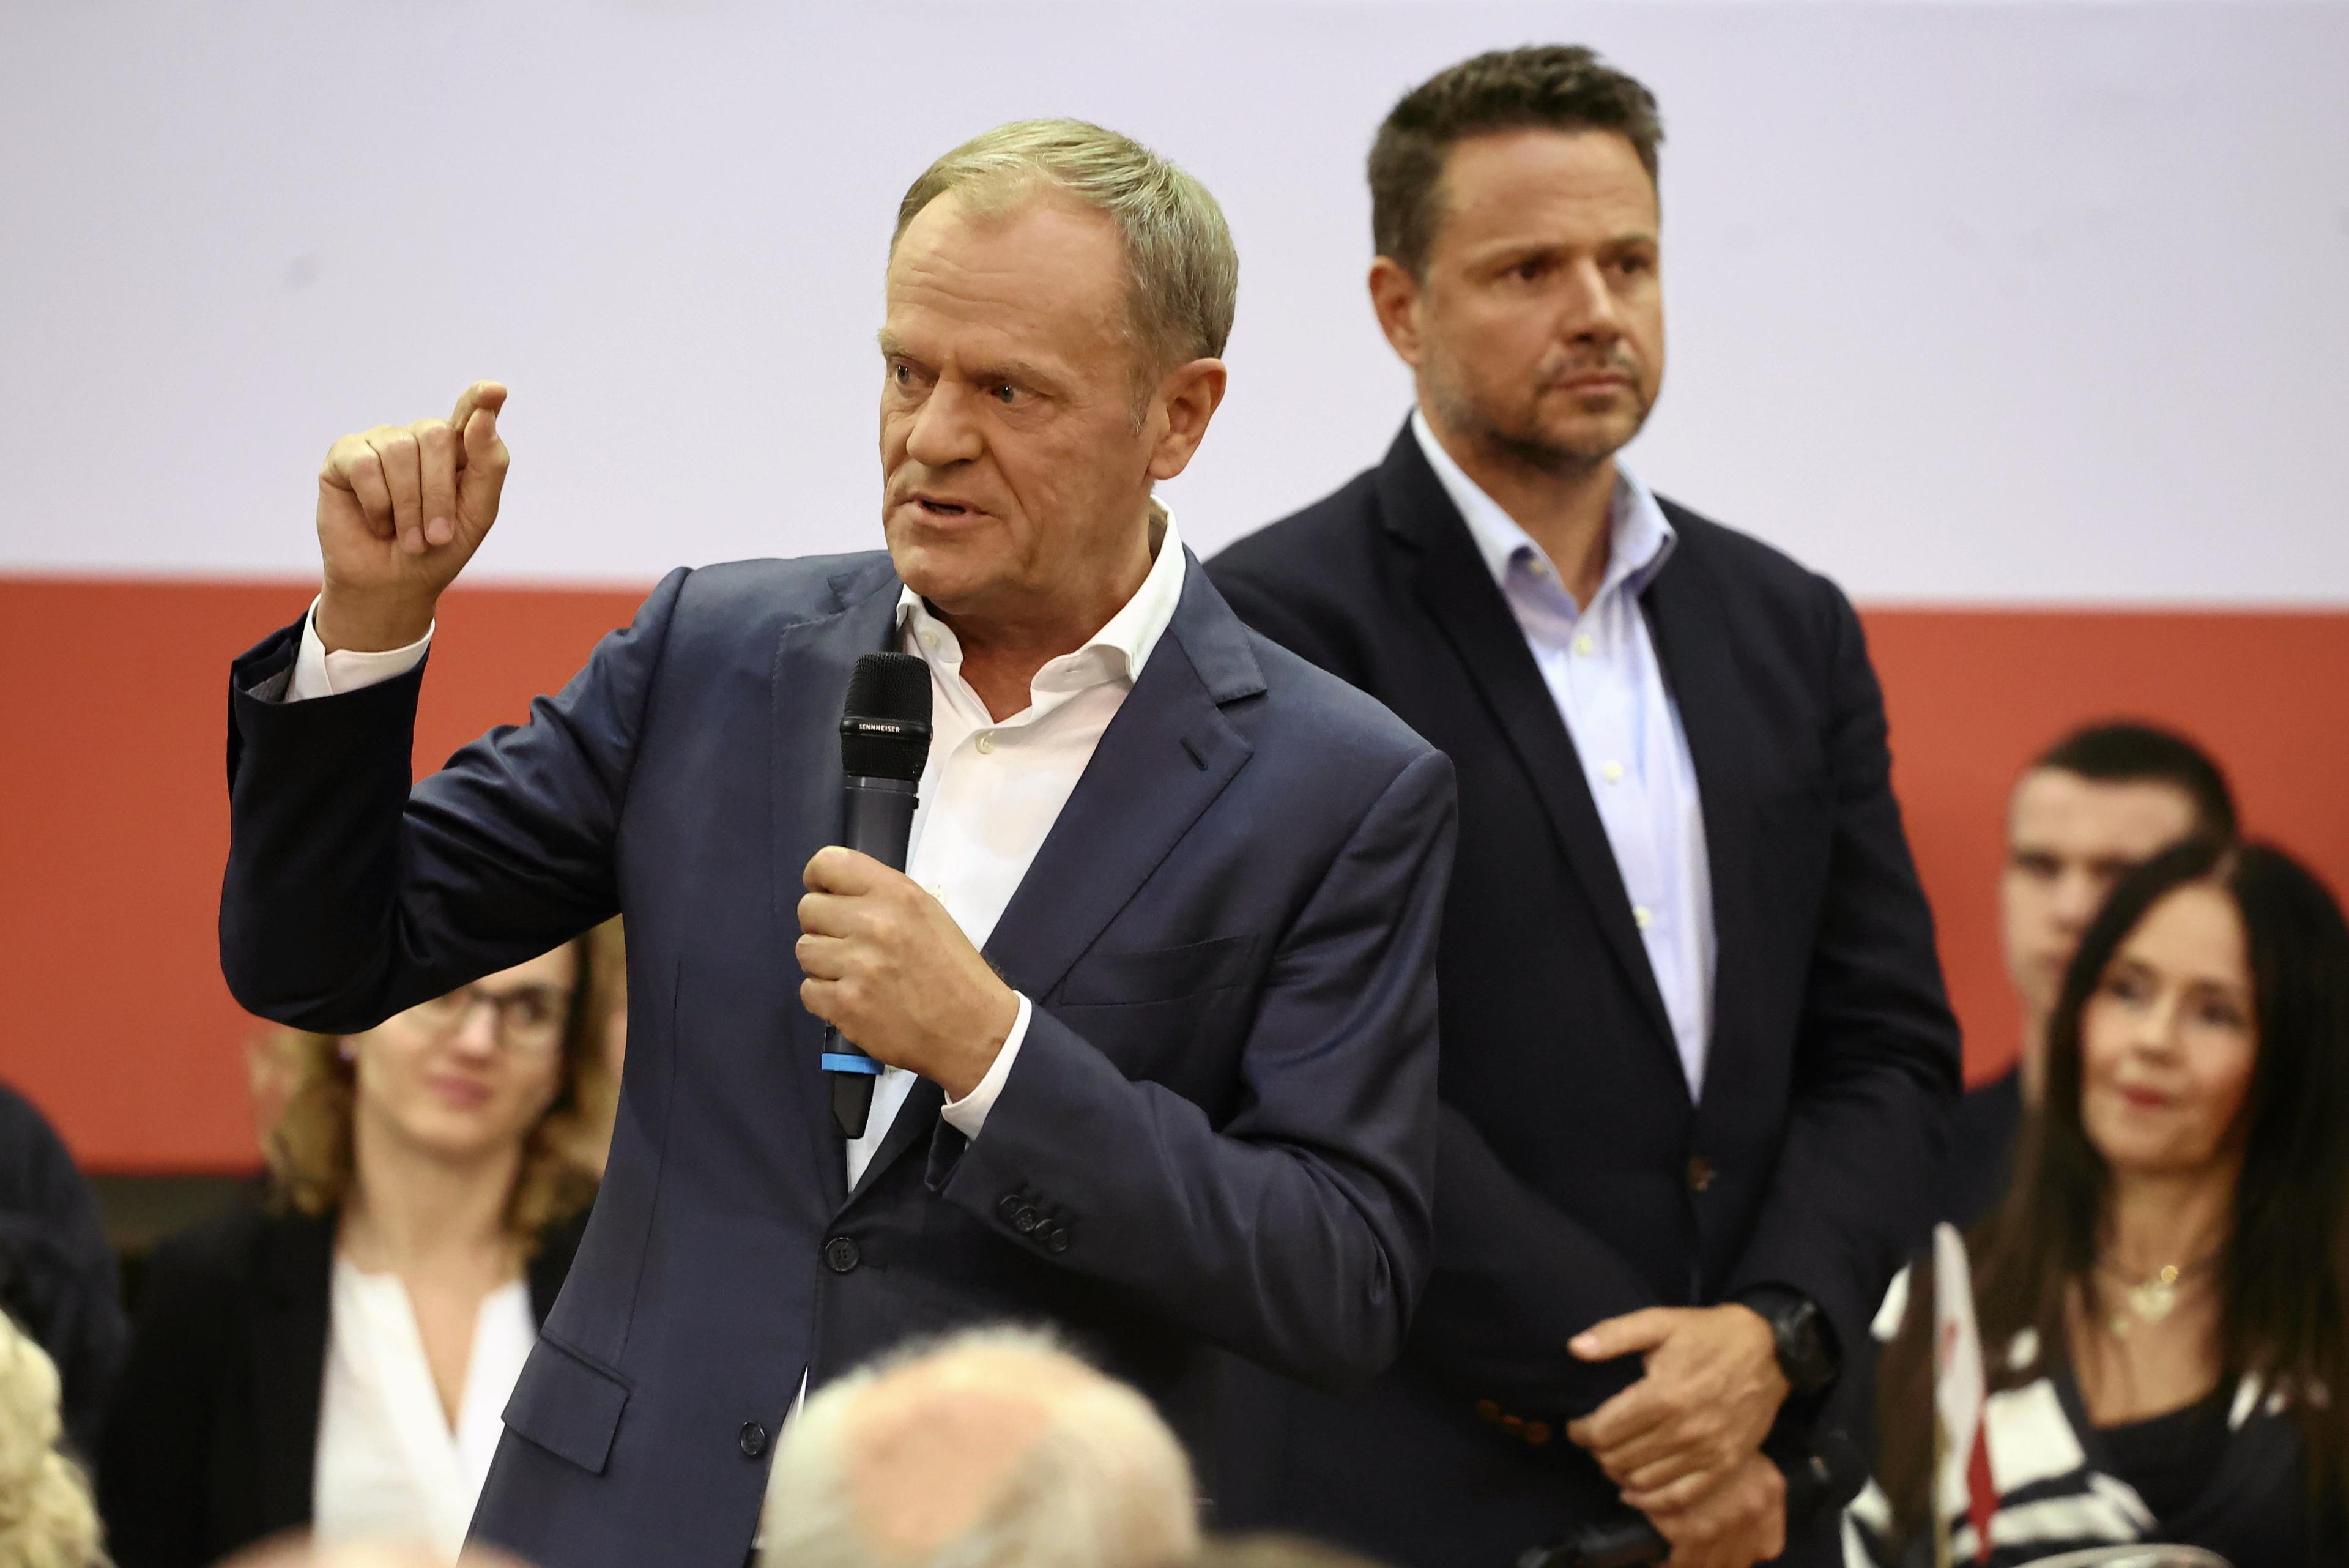 Dwaj mężczyźni w marynarkach bez krawatów: Donald Tusk mówi i gestykuluje, Rafał Trzaskowski słucha